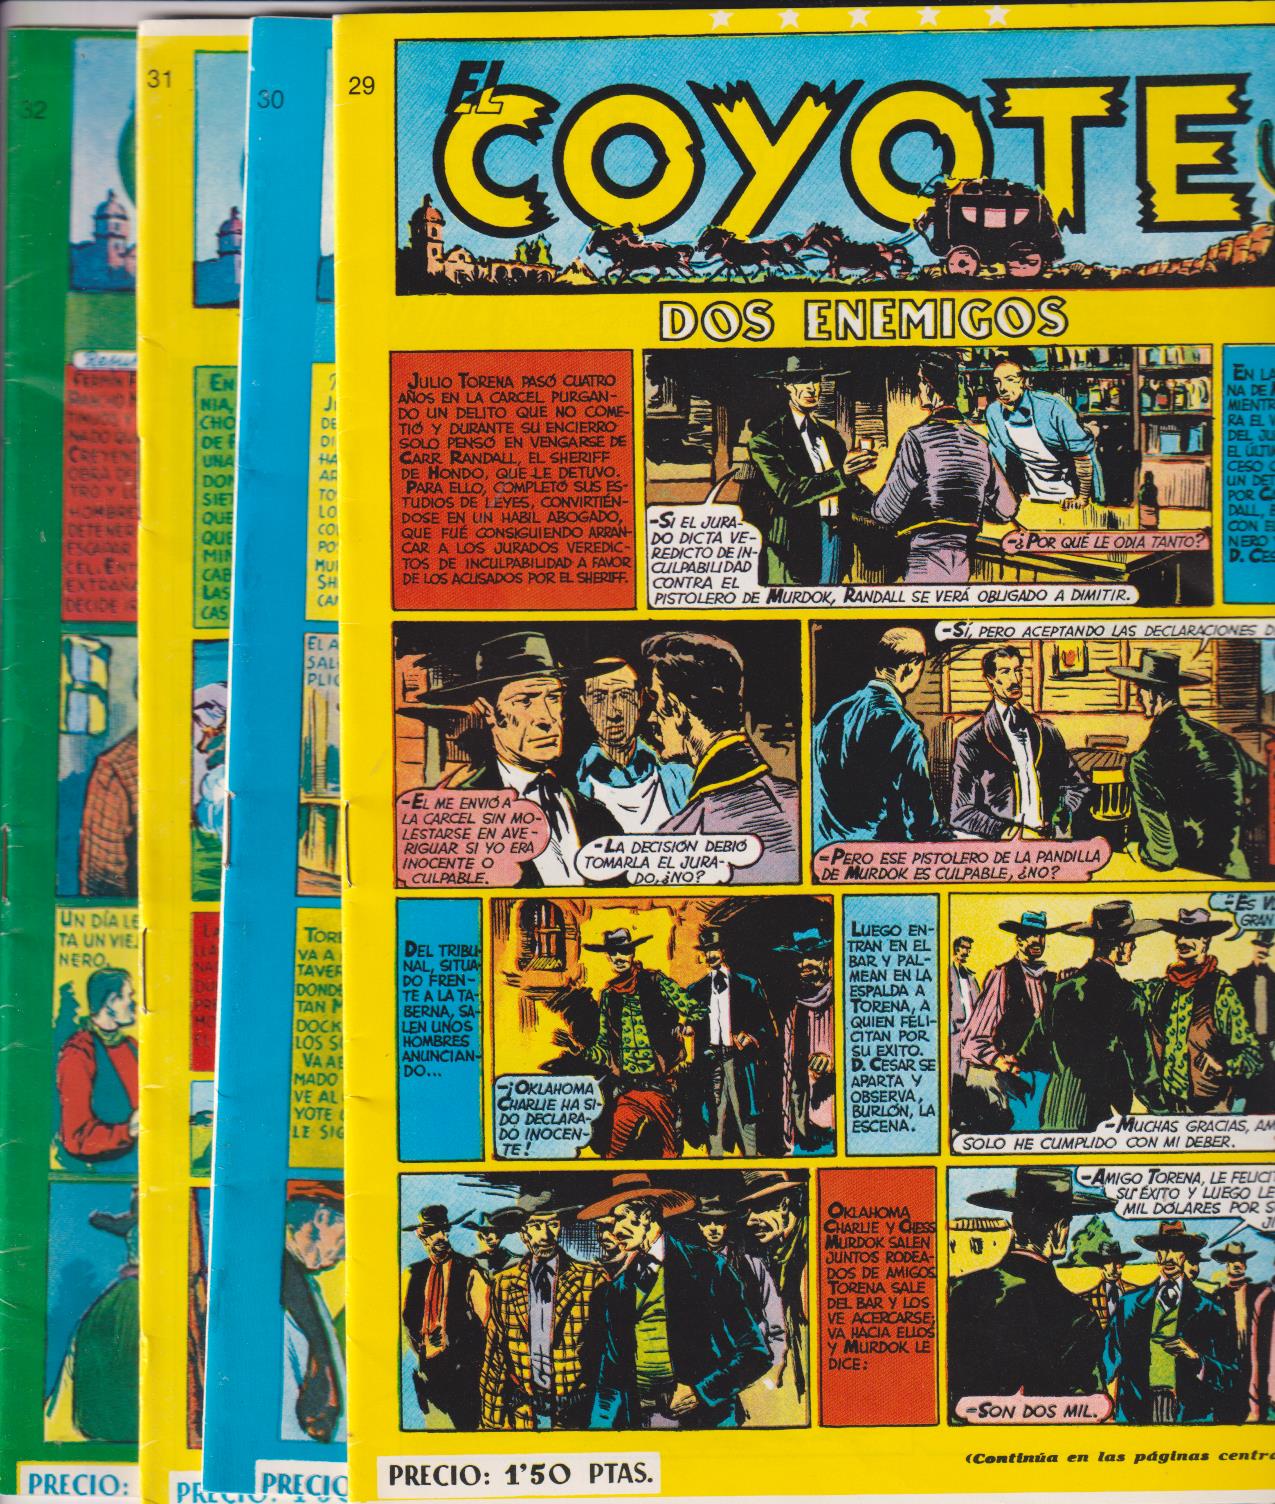 El Coyote. Lote de 4 ejemplares: 29, 30, 31 y 32. Reedición